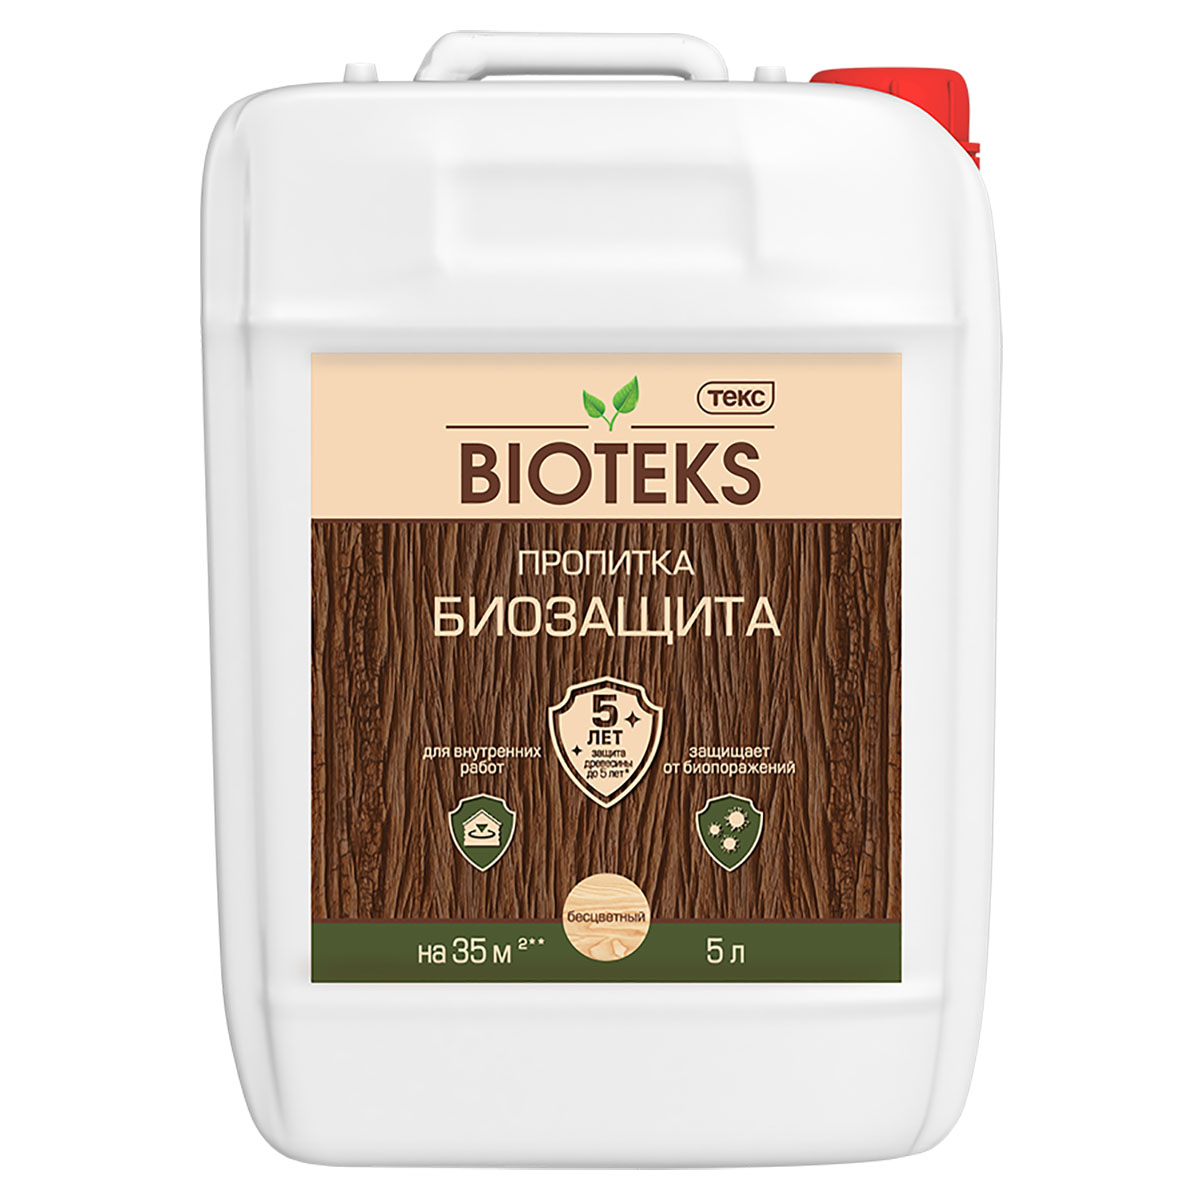 ТЕКС BIOTEKS Биозащита пропитка для защиты древесины, бесцветный (5л)